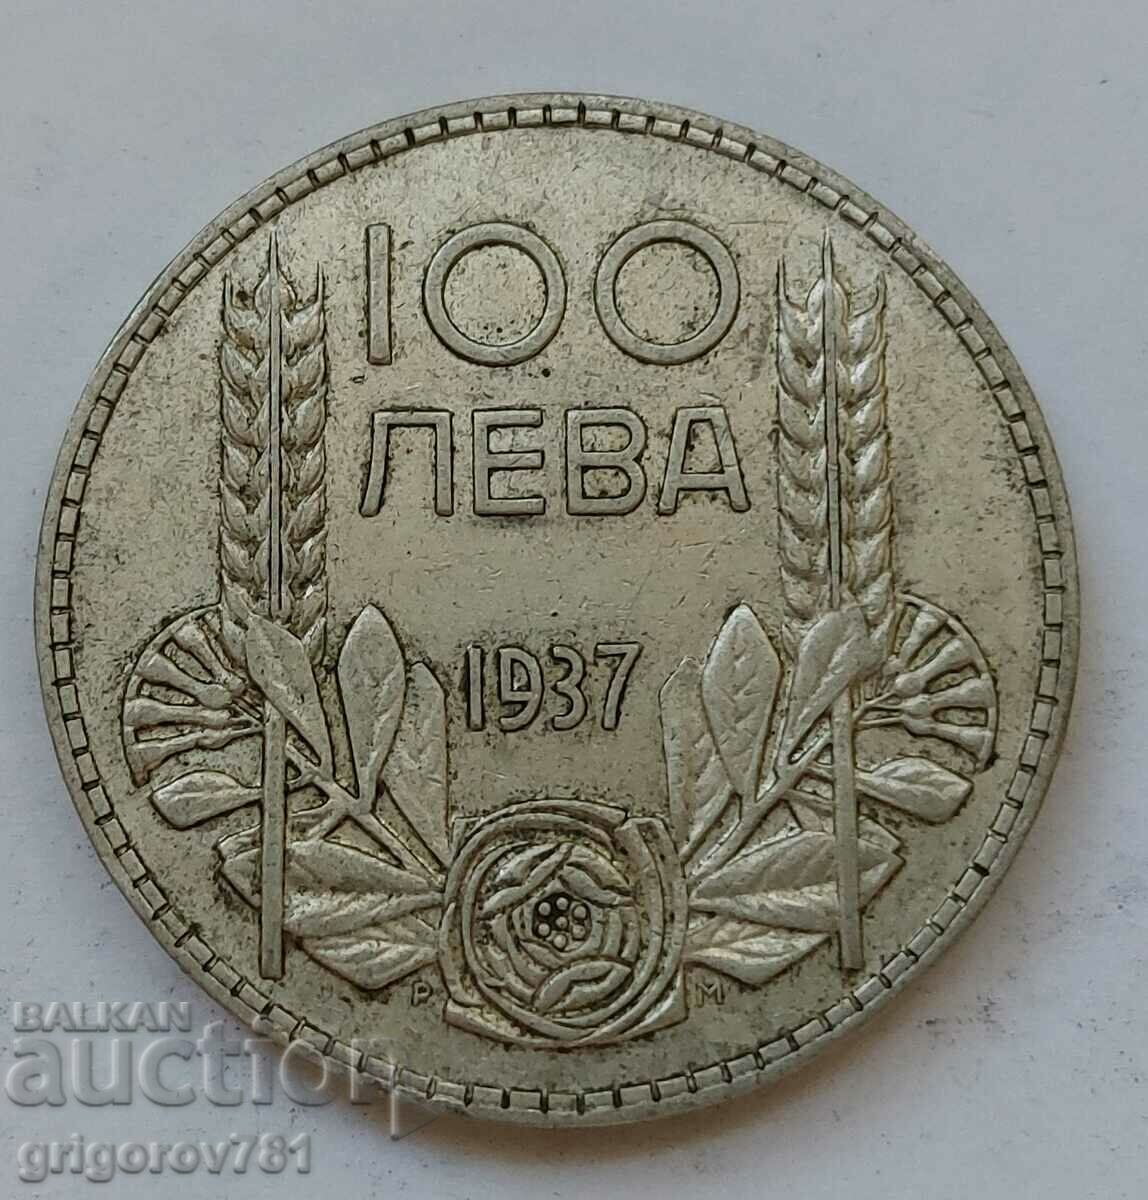 100 leva argint Bulgaria 1937 - monedă de argint #134